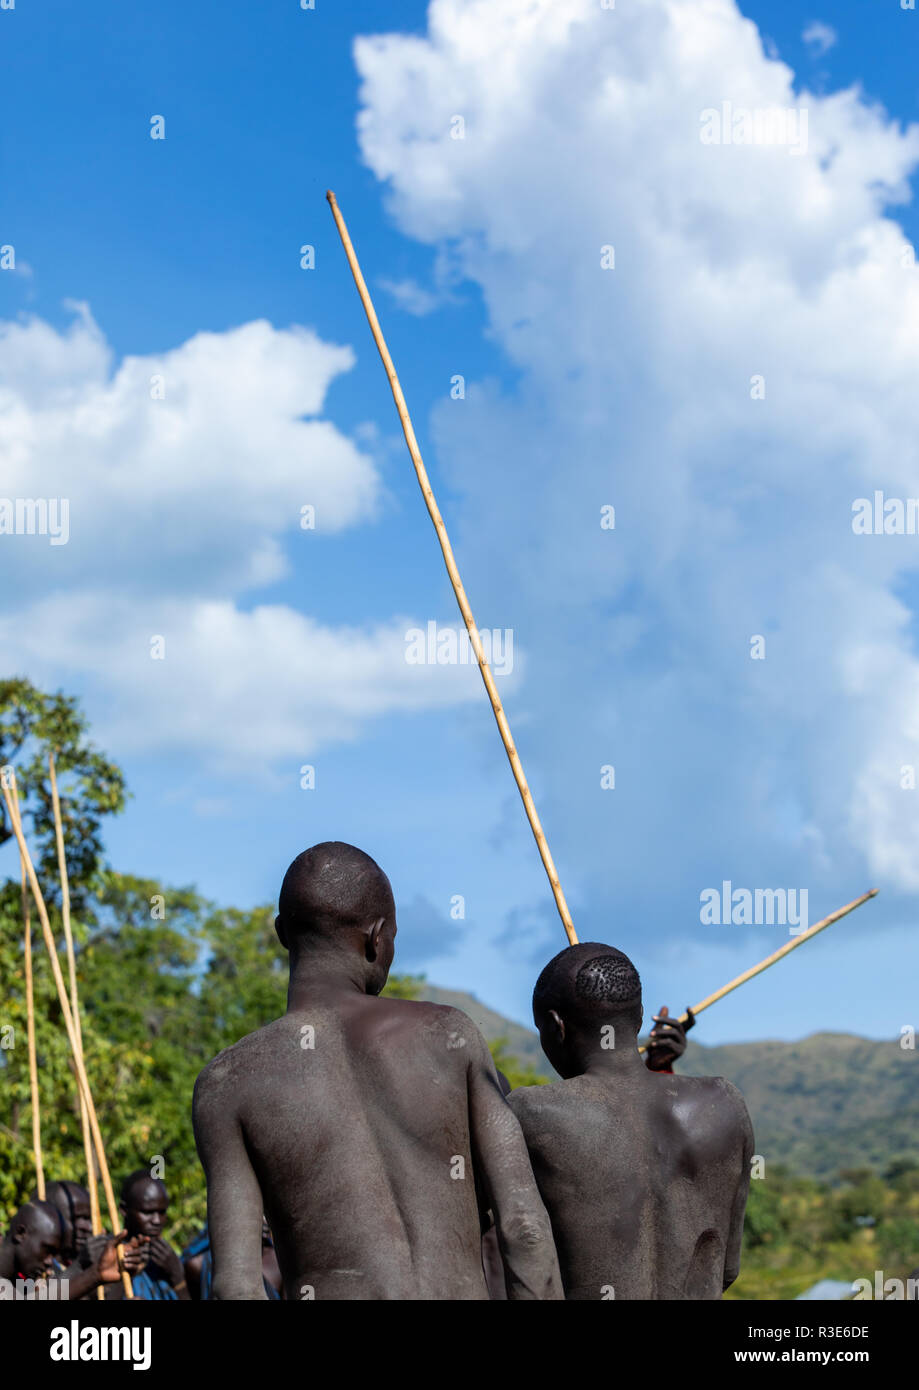 Suri tribe warriors durante un donga stick combattimenti rituali, valle dell'Omo, Kibish, Etiopia Foto Stock